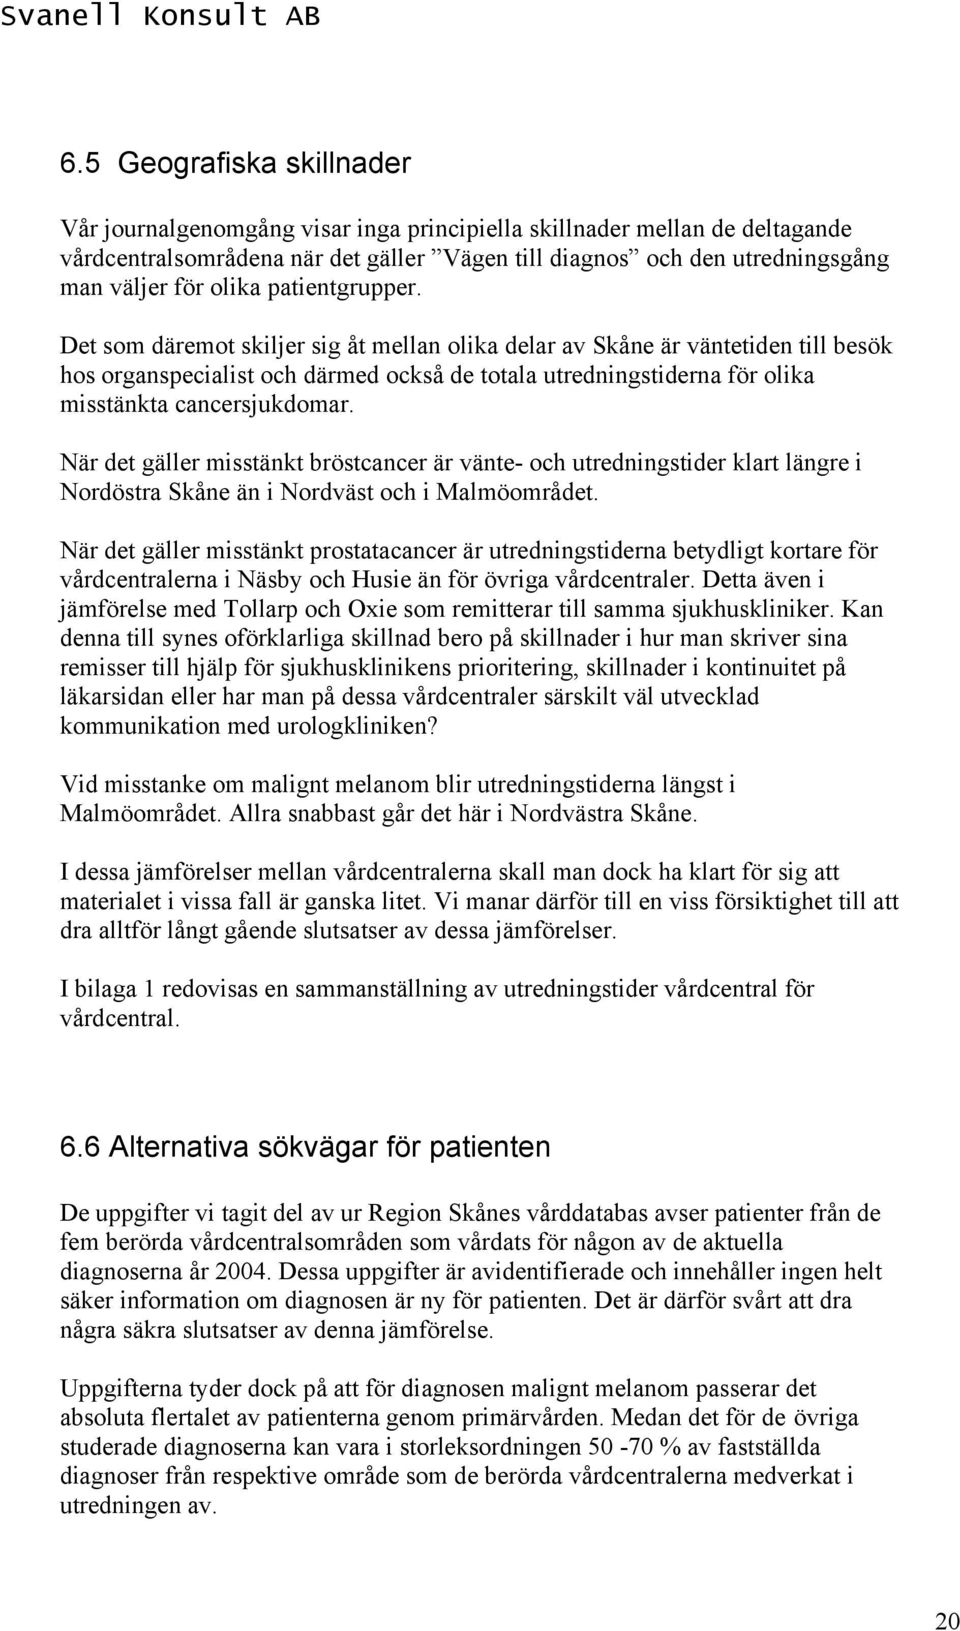 Det som däremot skiljer sig åt mellan olika delar av Skåne är väntetiden till besök hos organspecialist och därmed också de totala utredningstiderna för olika misstänkta cancersjukdomar.